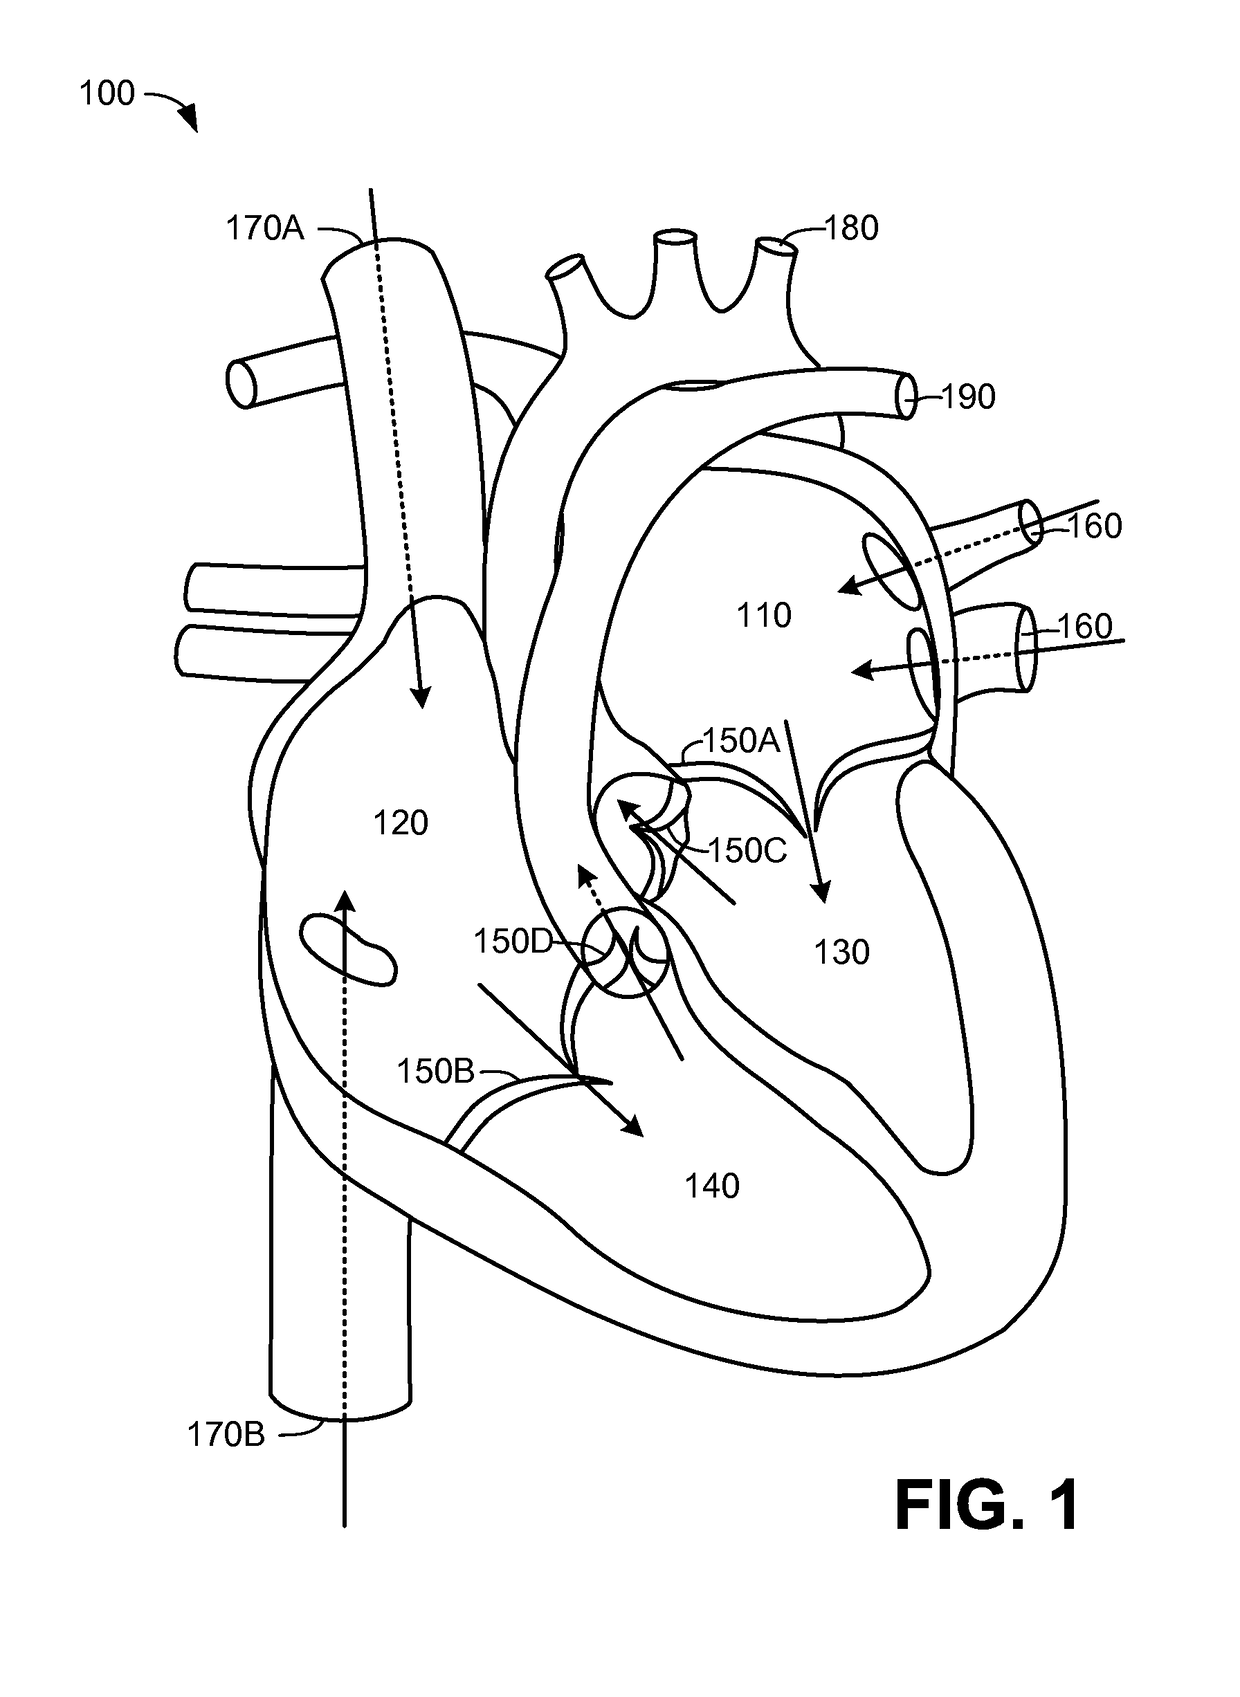 Trileaflet Mechanical Prosthetic Heart Valve